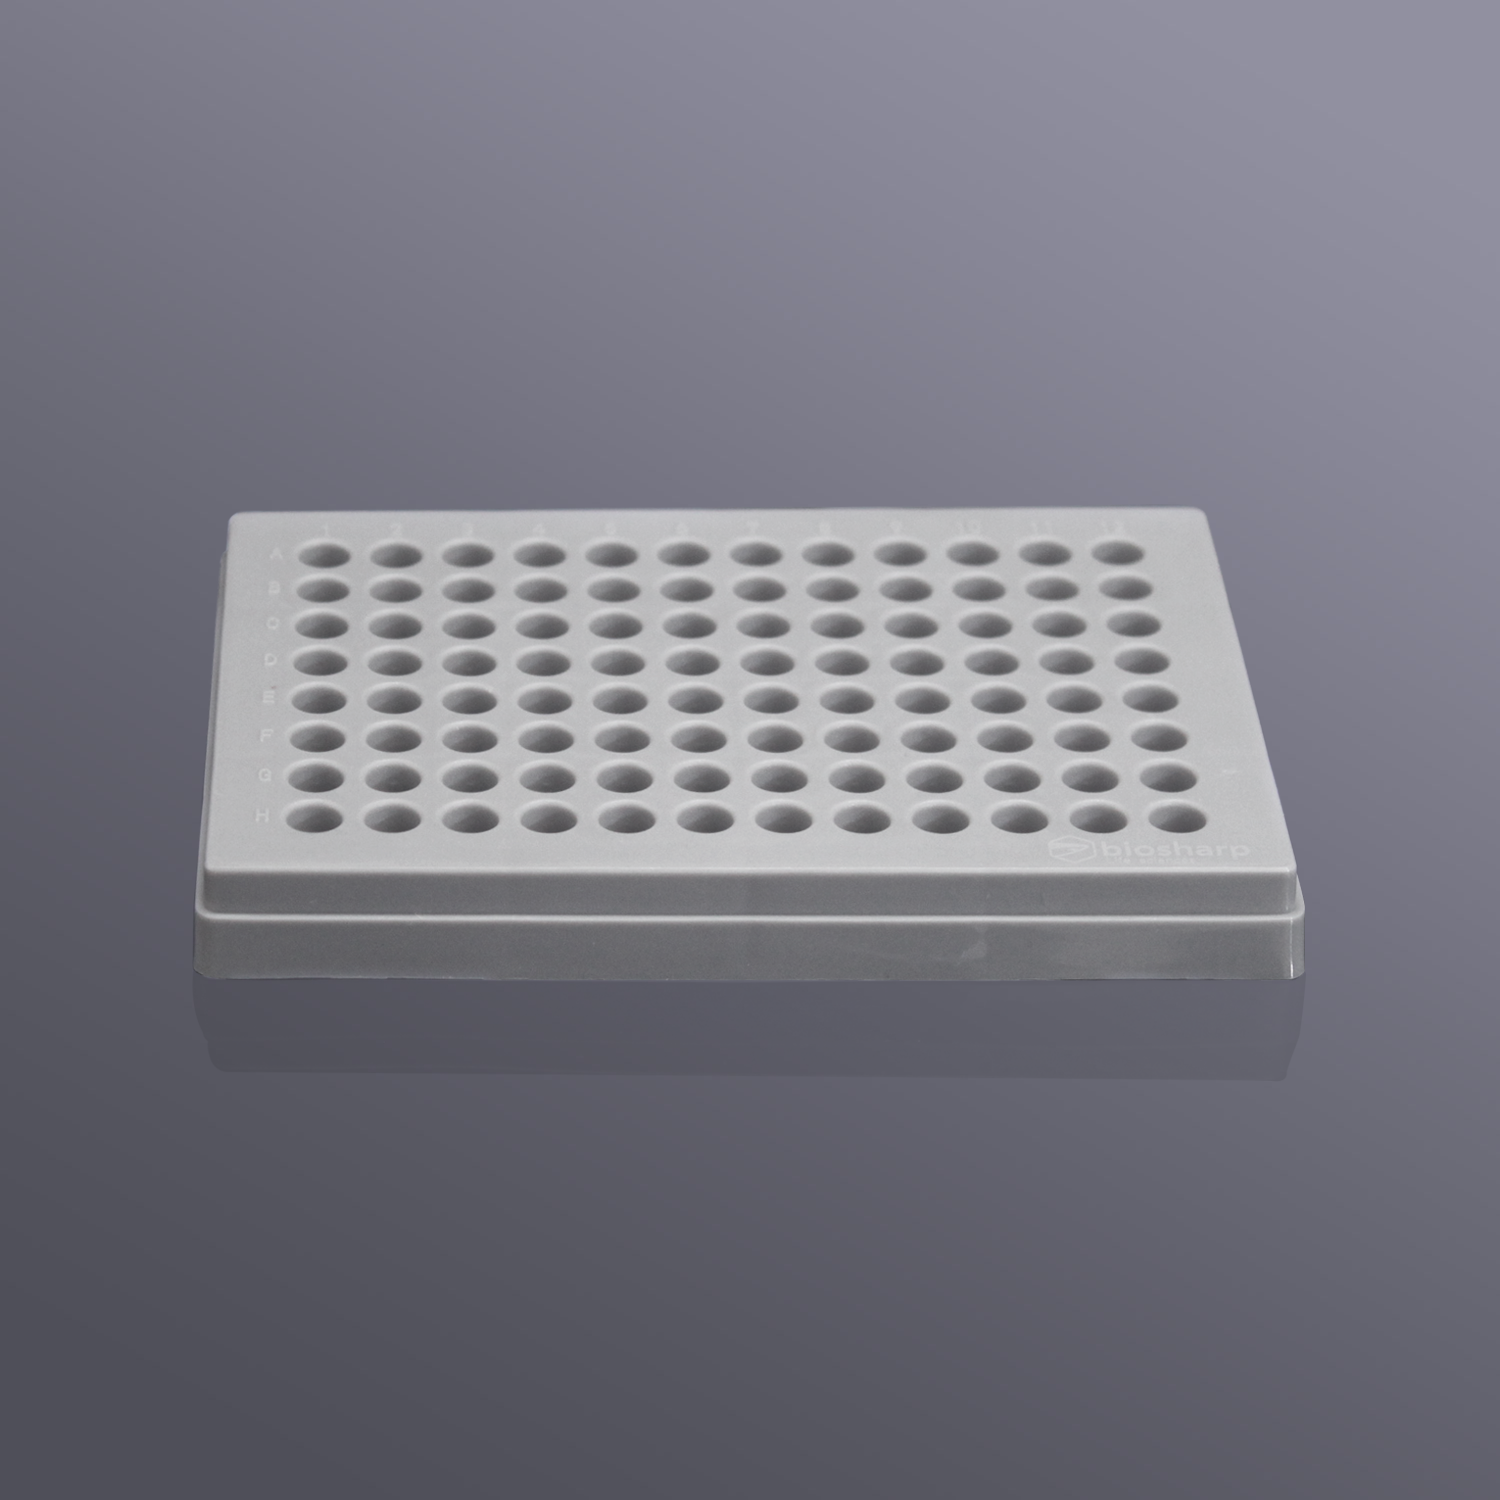 0.2ml薄壁管盒(PC),灰色